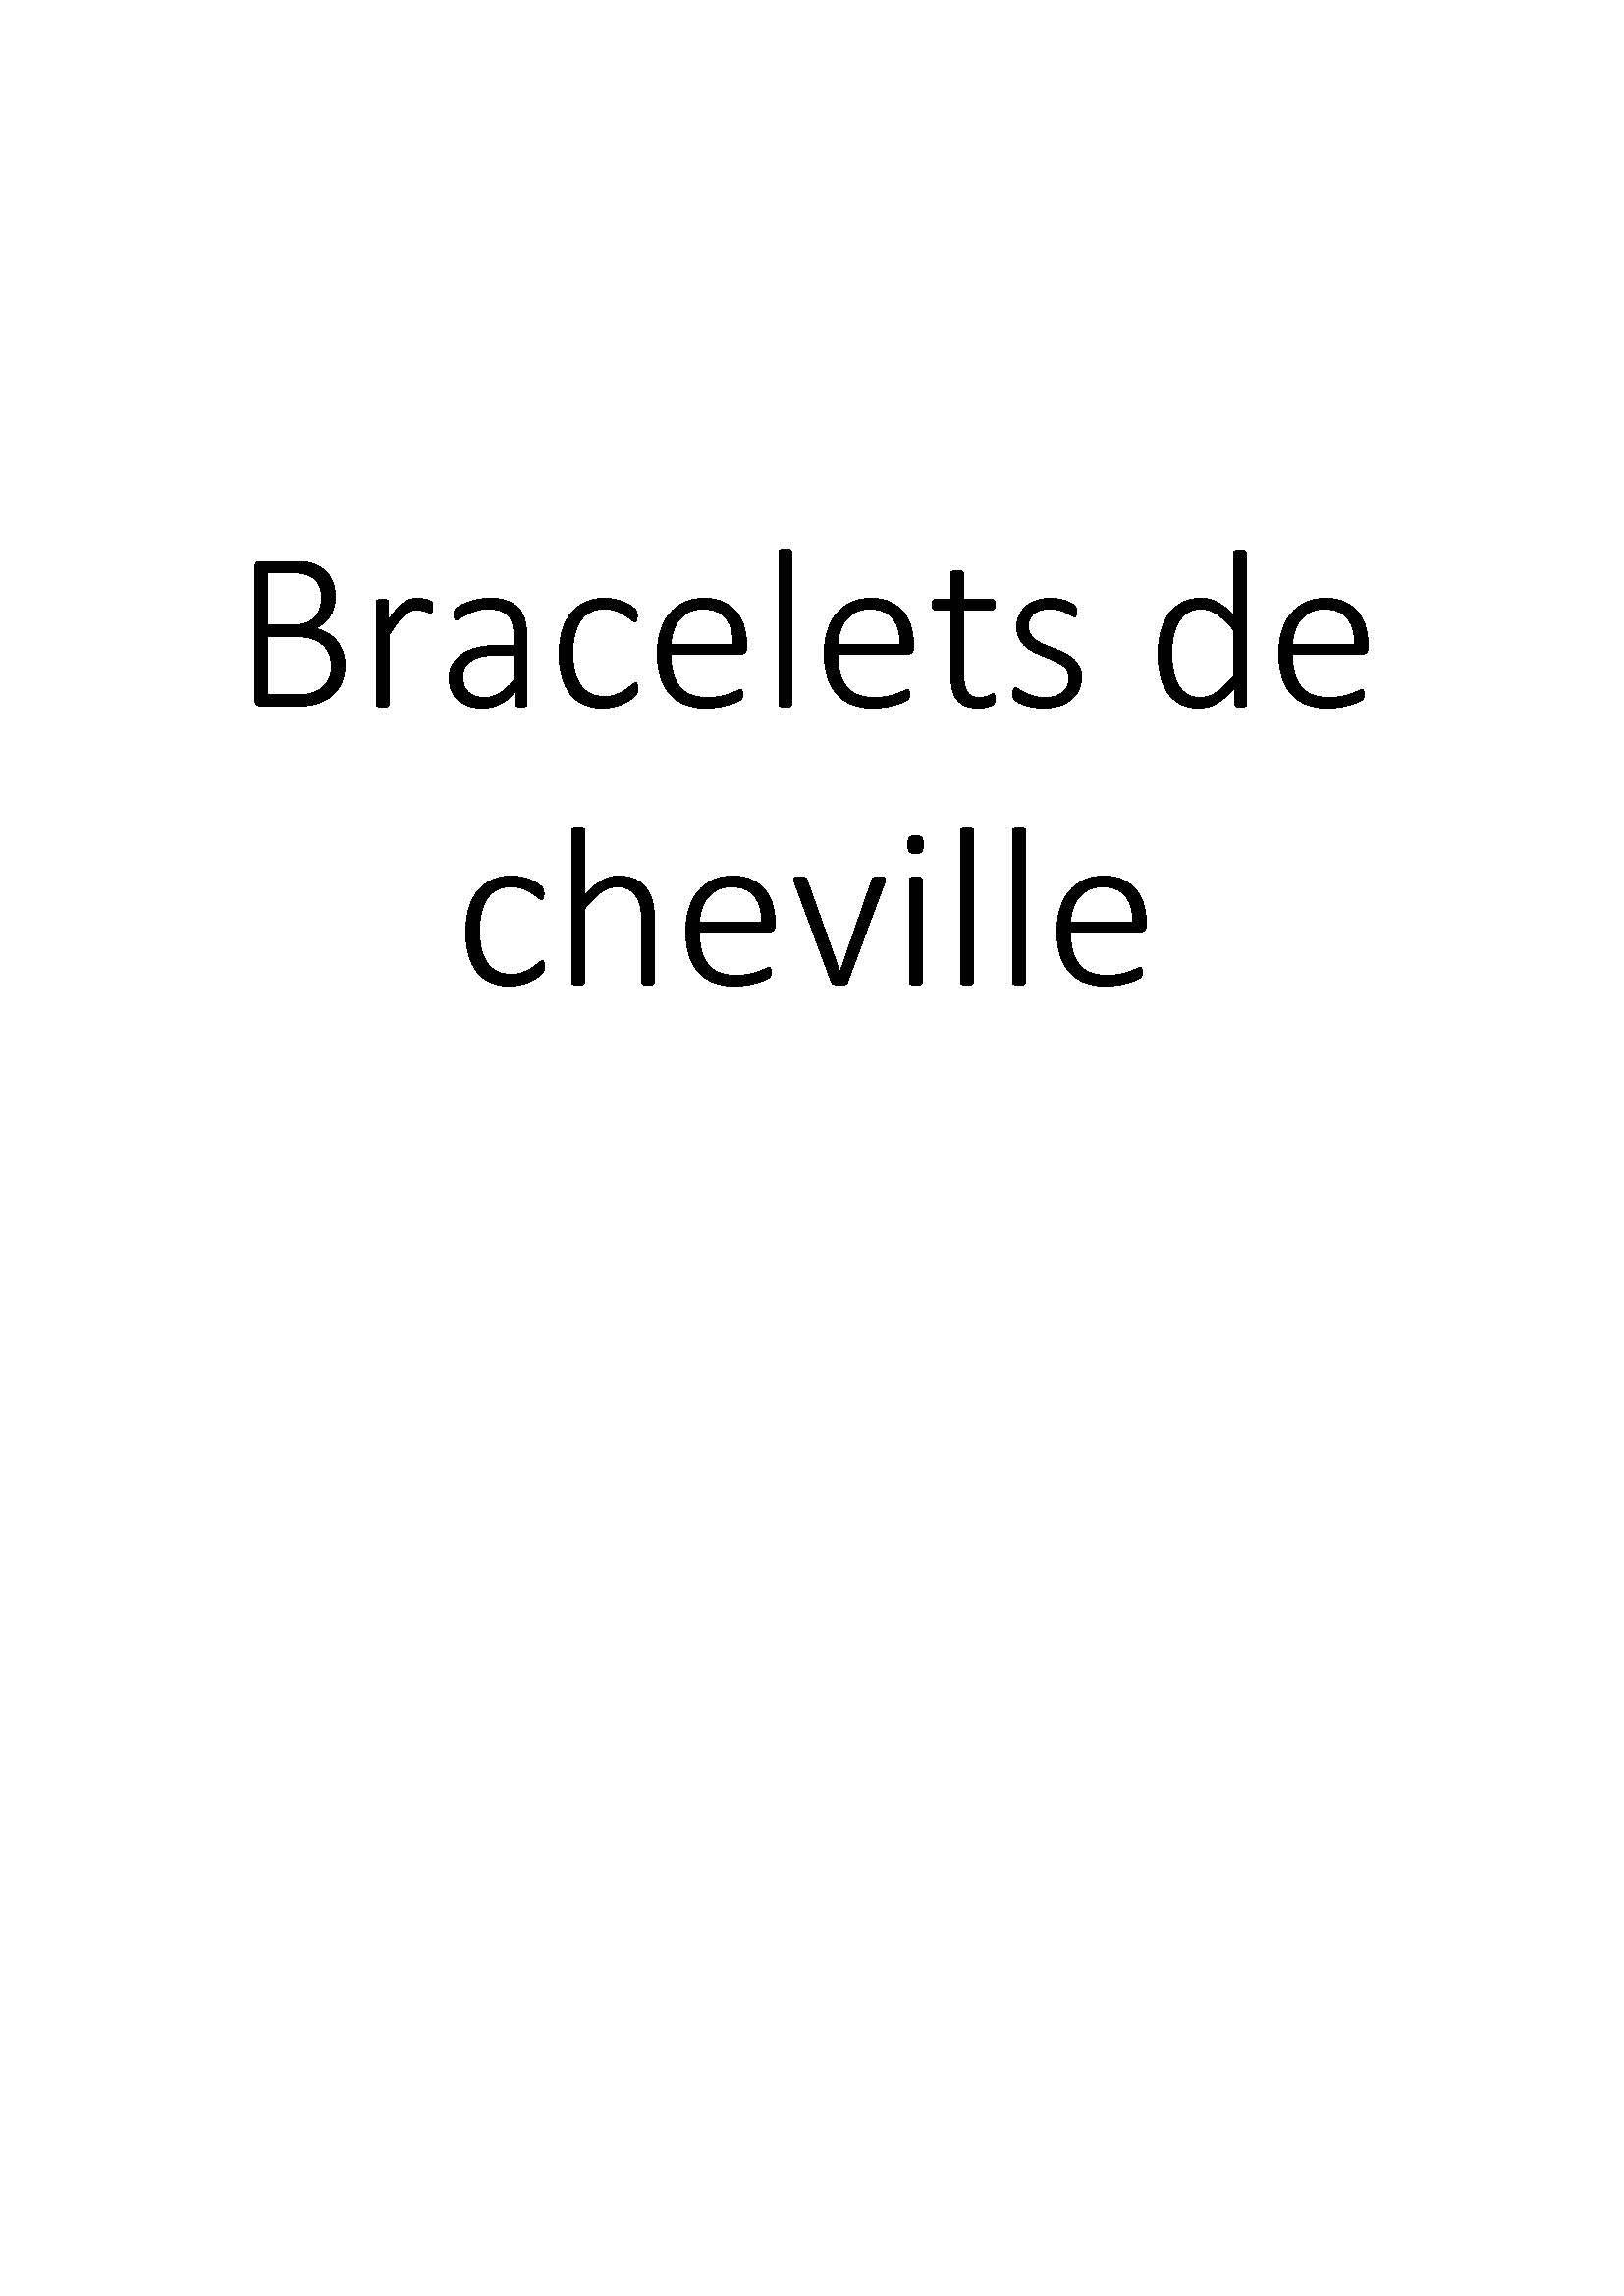 Bracelets de cheville clicktofournisseur.com